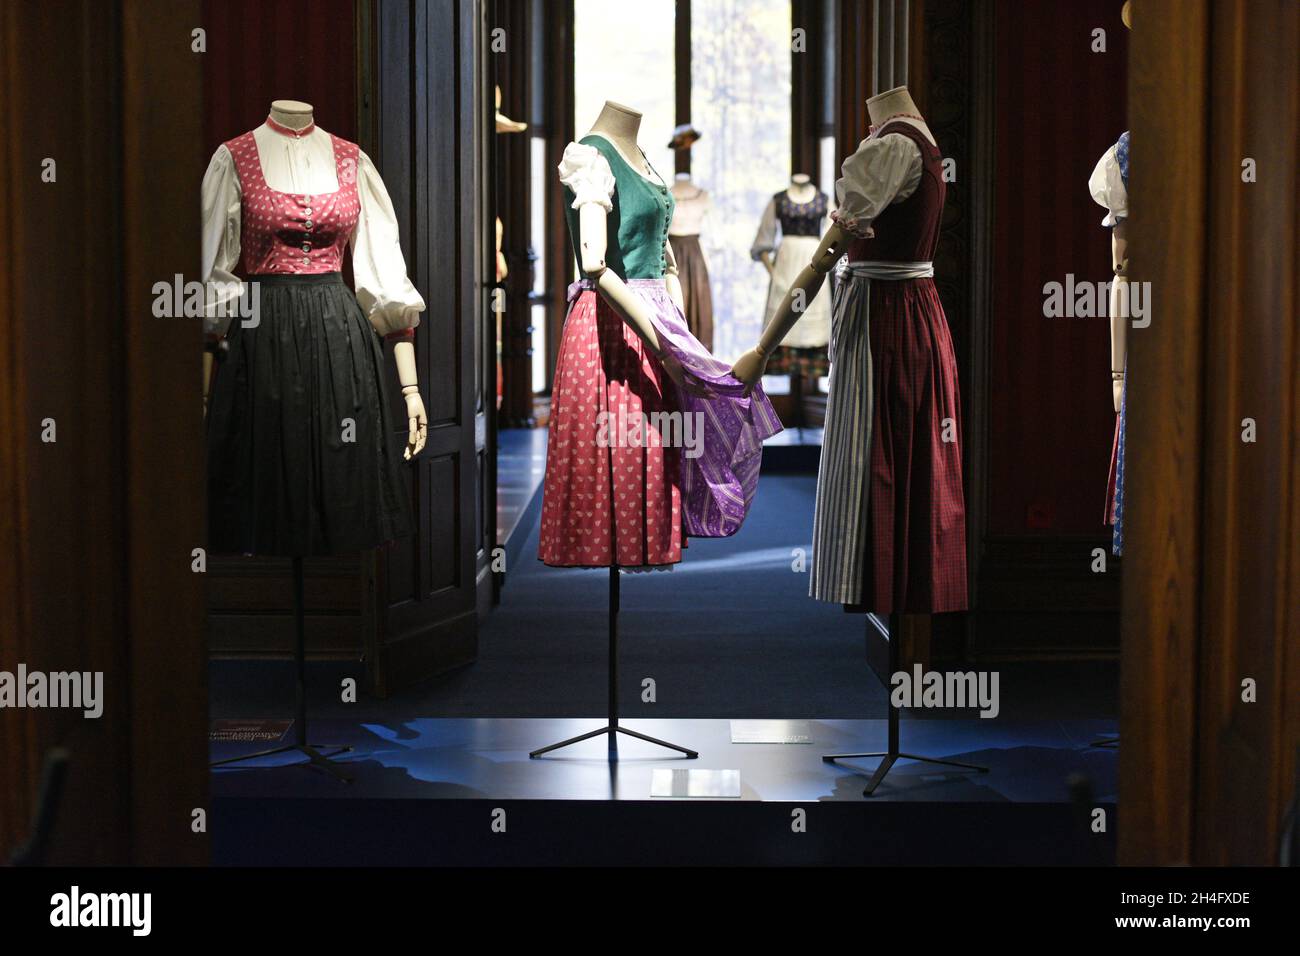 Das 'Dirndl', ein typisch österreichisches und bayerisches Kleid, Europa - The 'Dirndl', a typical Austrian and Bavarian dress, Europe Stock Photo